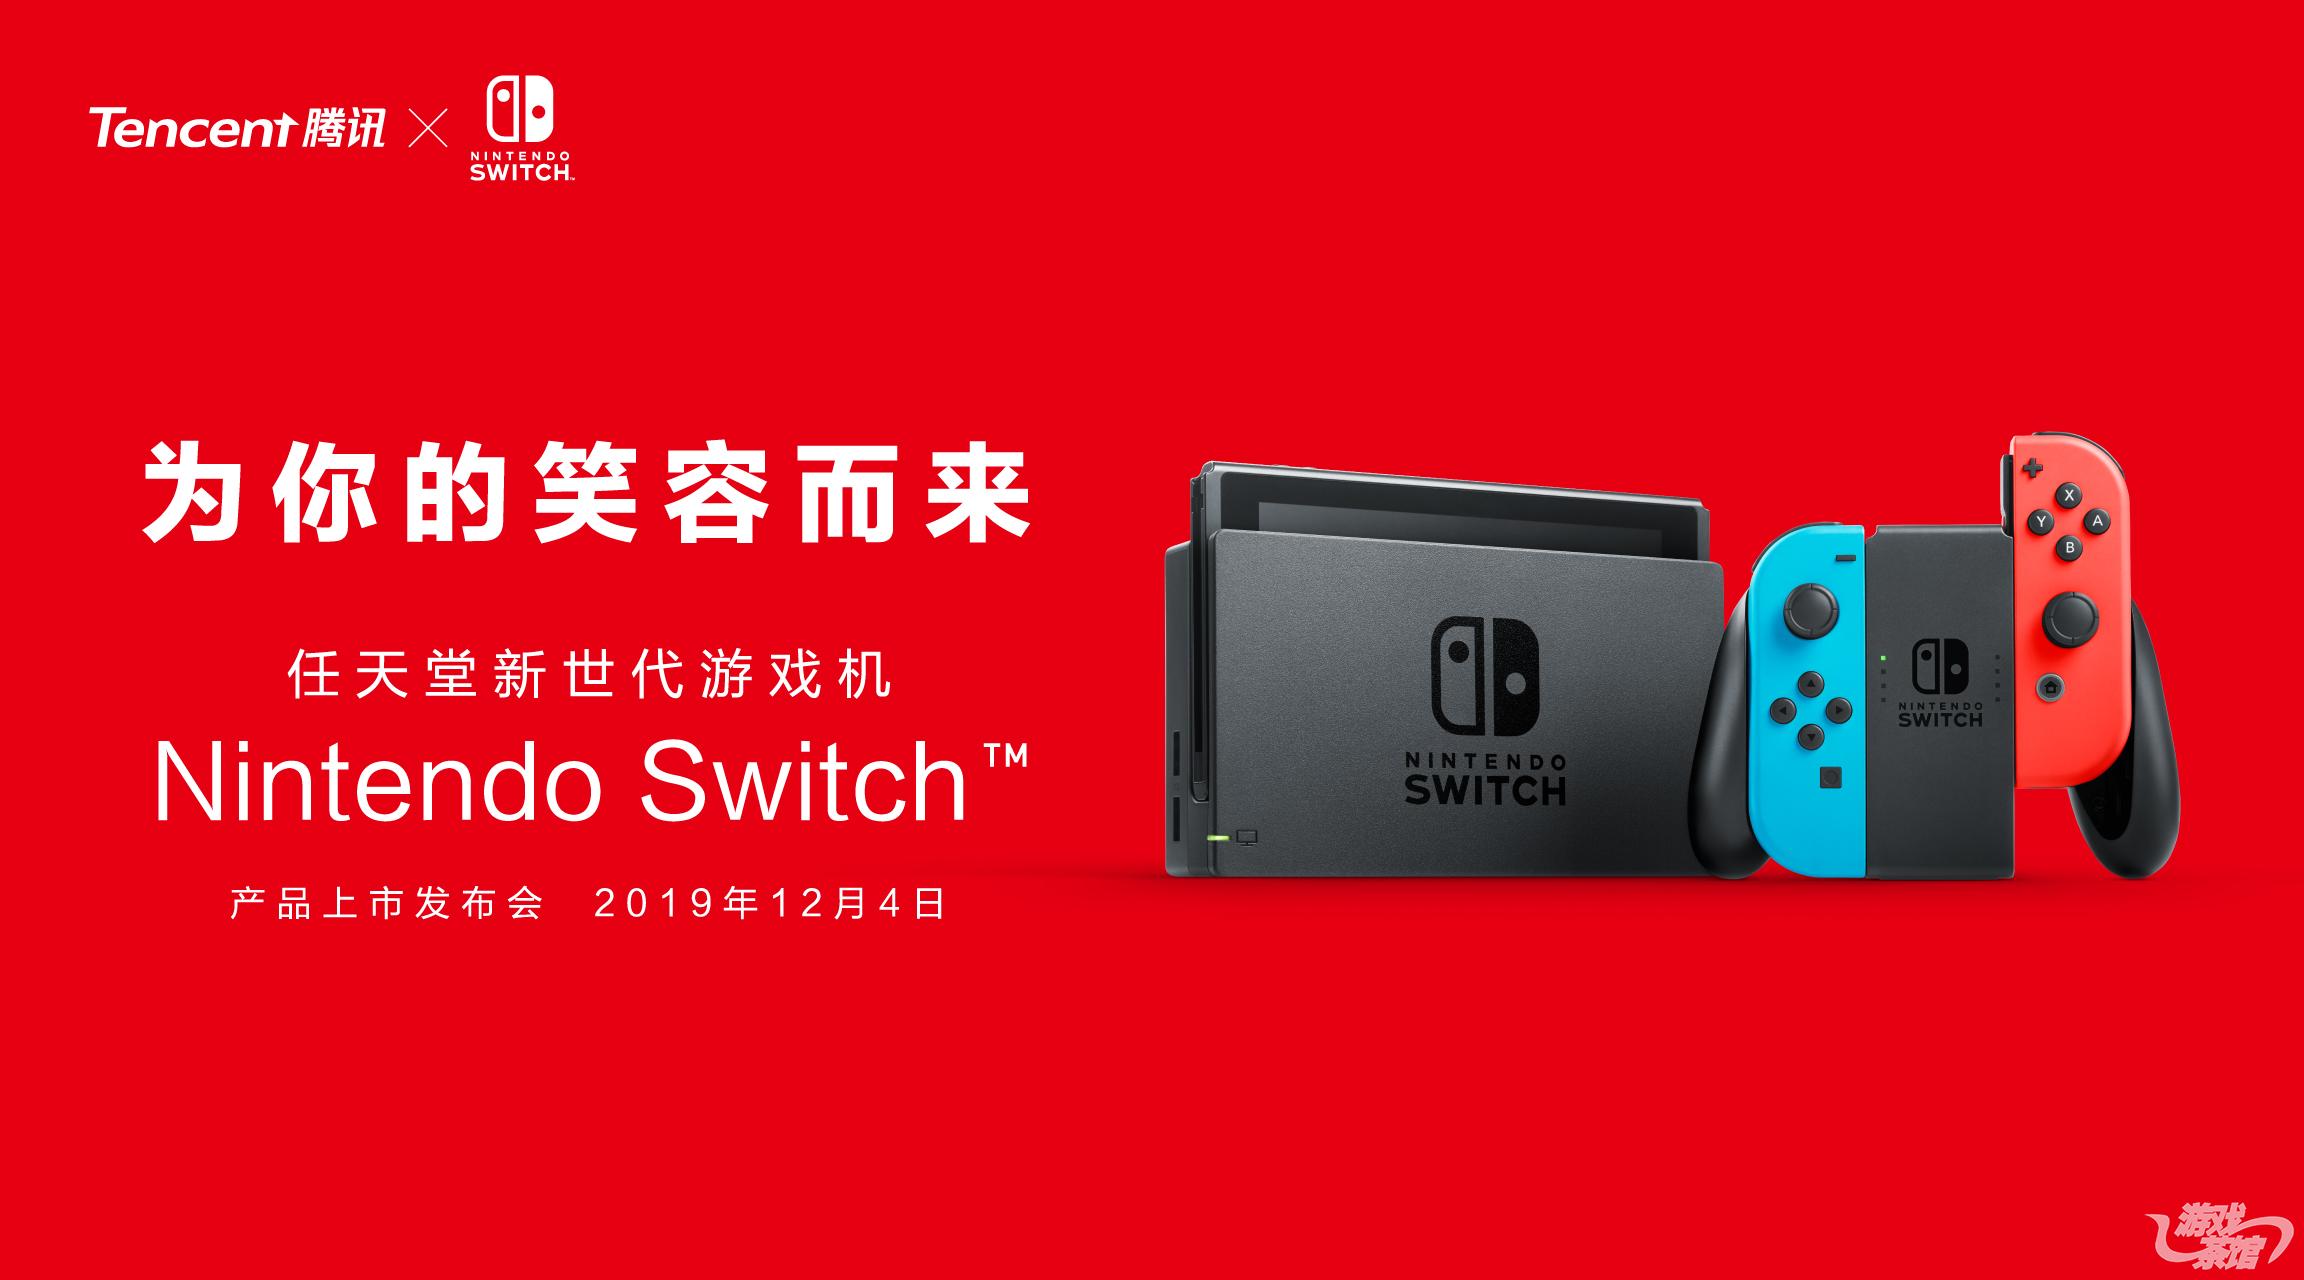 01_国行Nintendo Switch产品上市发布会主视觉.jpg